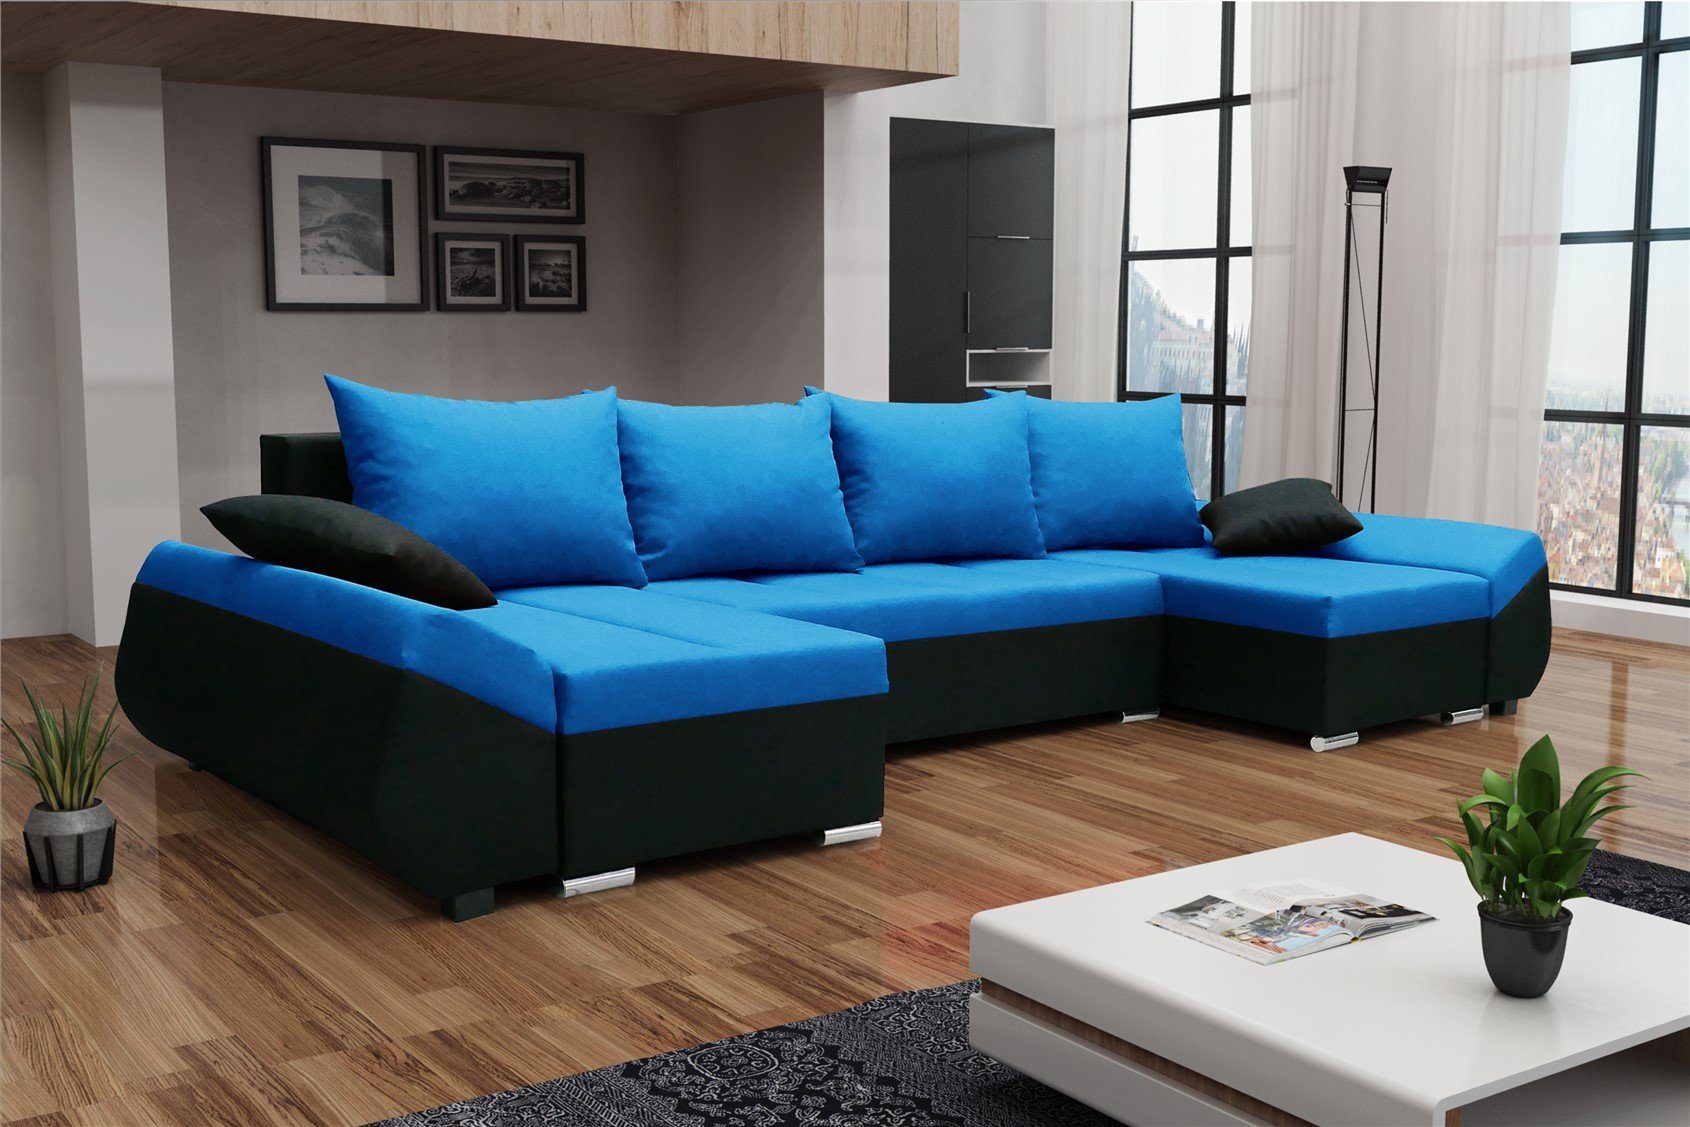 Wohnlandschaft Fun KLEO U-Form Rückenkissen in Sofa mit Stoff, Schwarz-Blau in Zierkissen, inkl. Bettkasten und Möbel